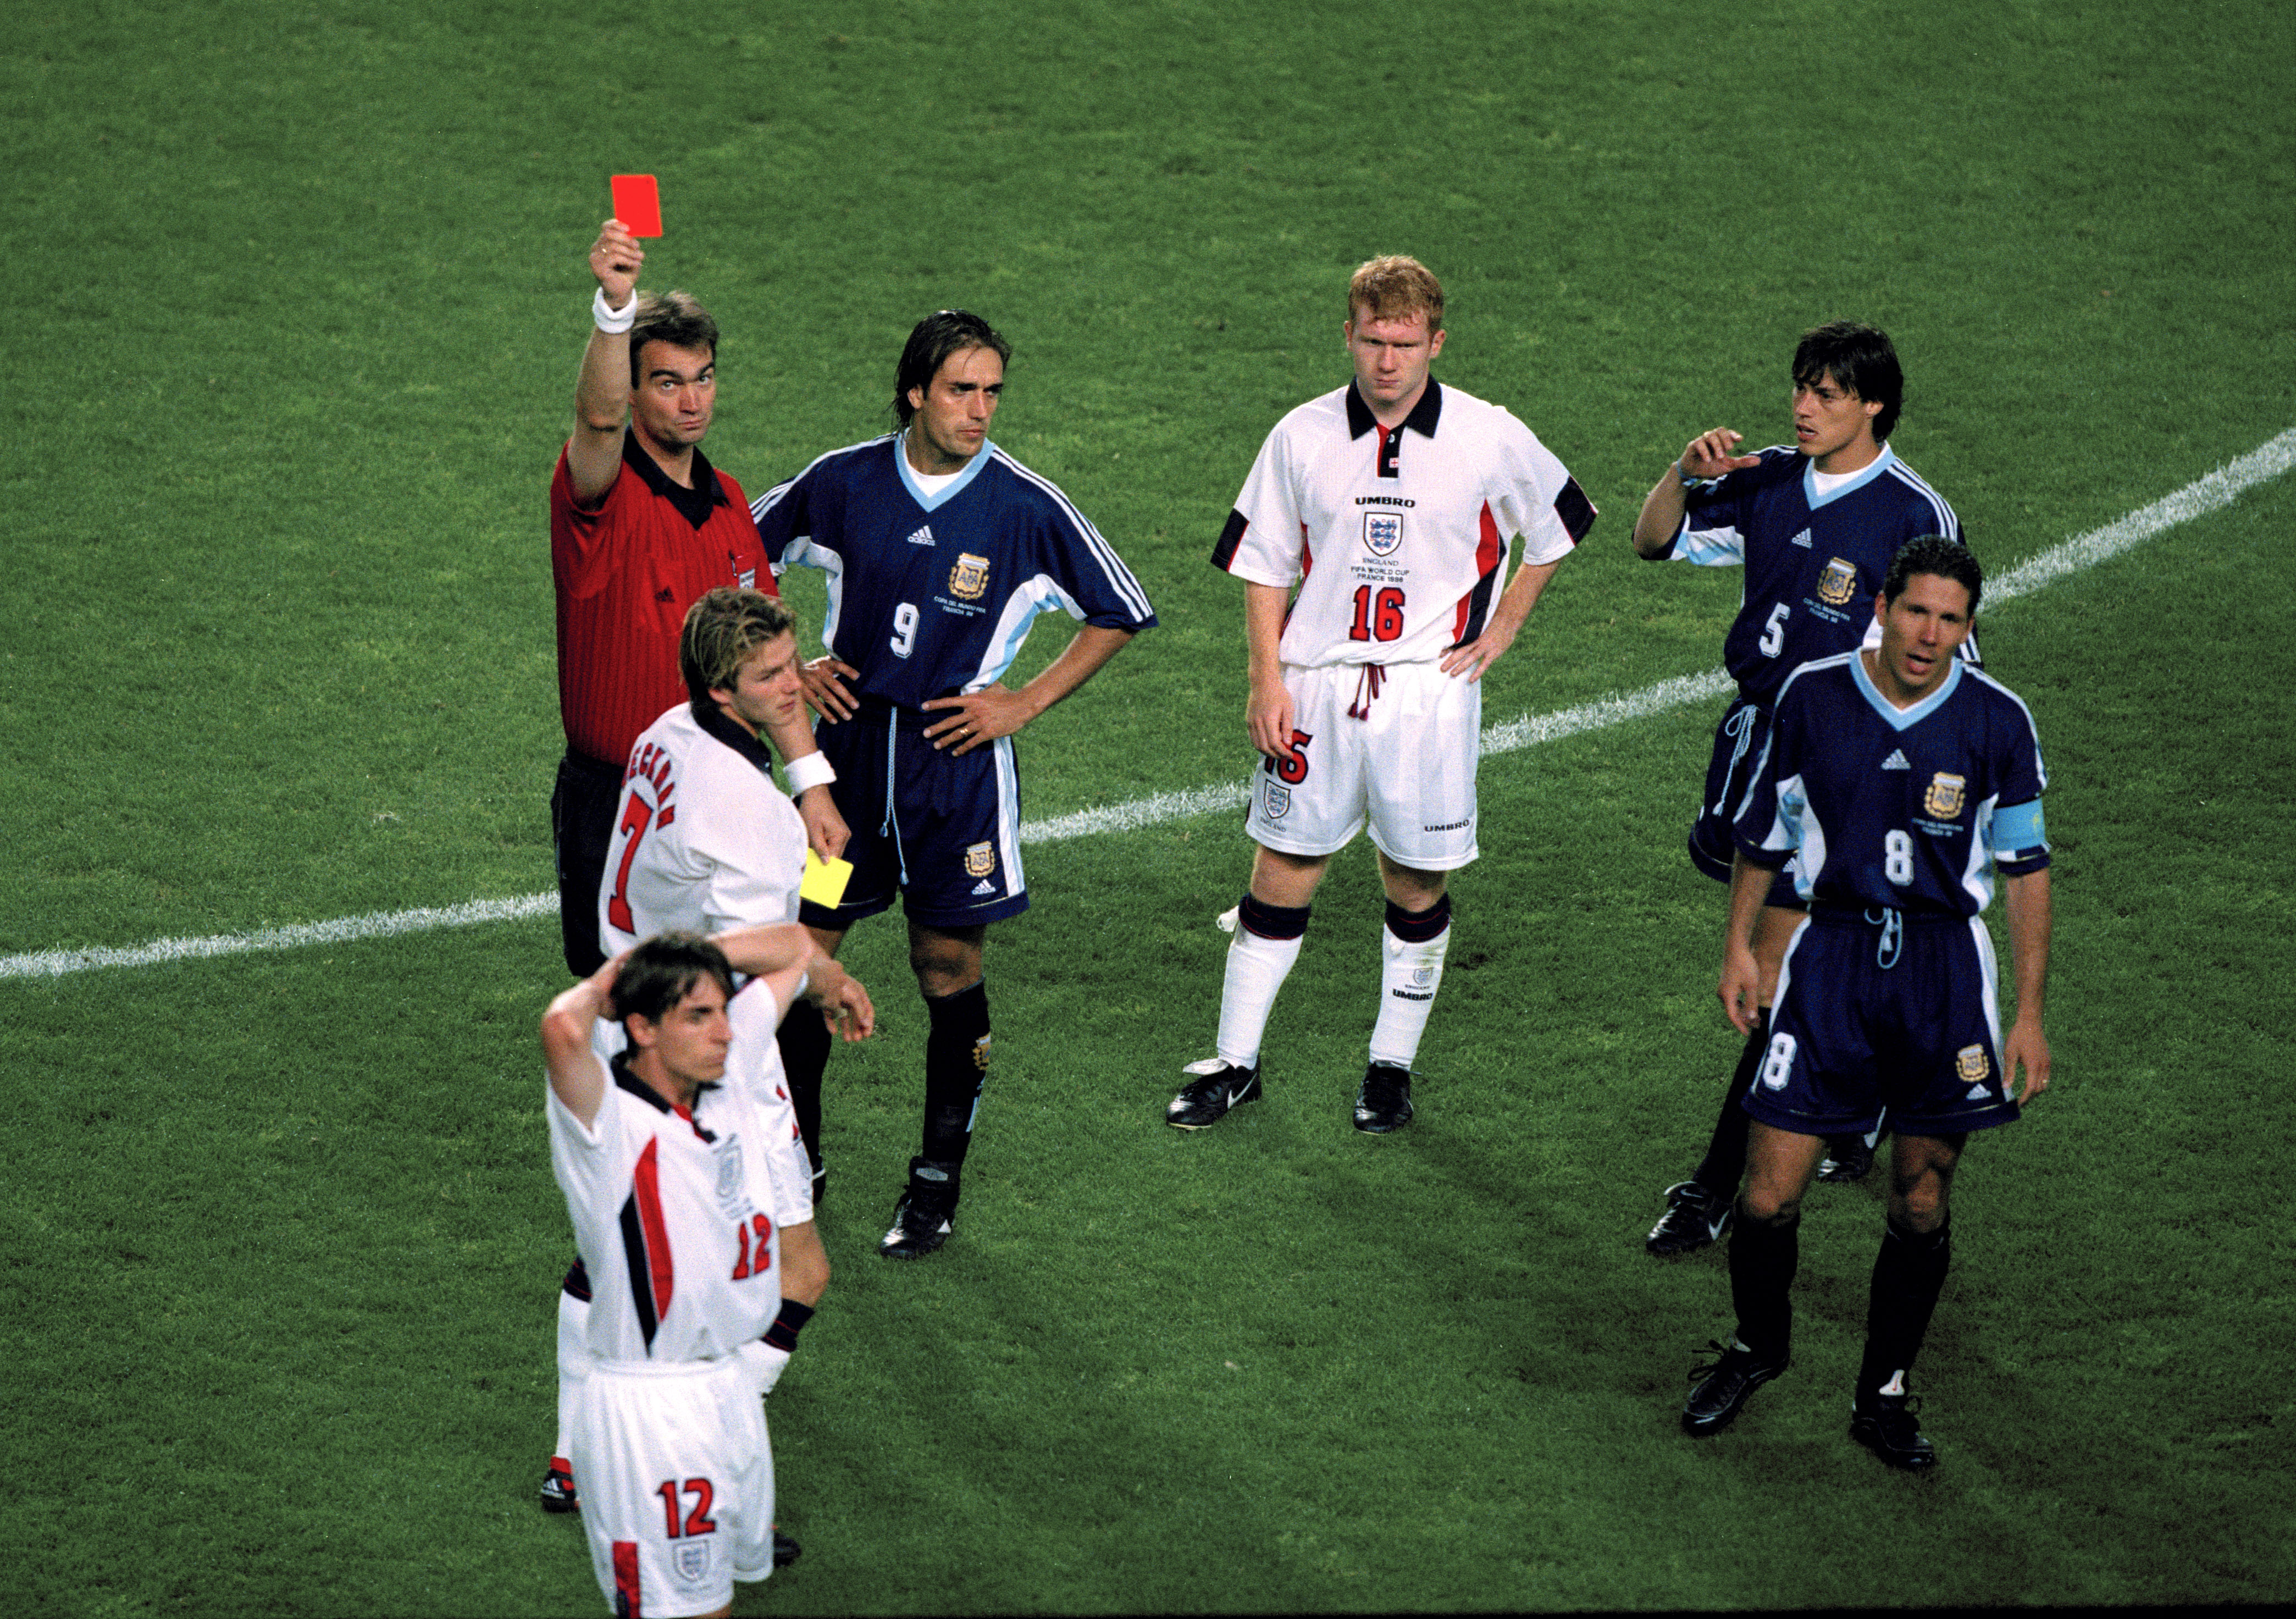 David Beckham wurde von der Öffentlichkeit abscheulich beschimpft, nachdem er 1998 beim Weltmeisterschaftsspiel zwischen England und Argentinien vom Platz gestellt worden war